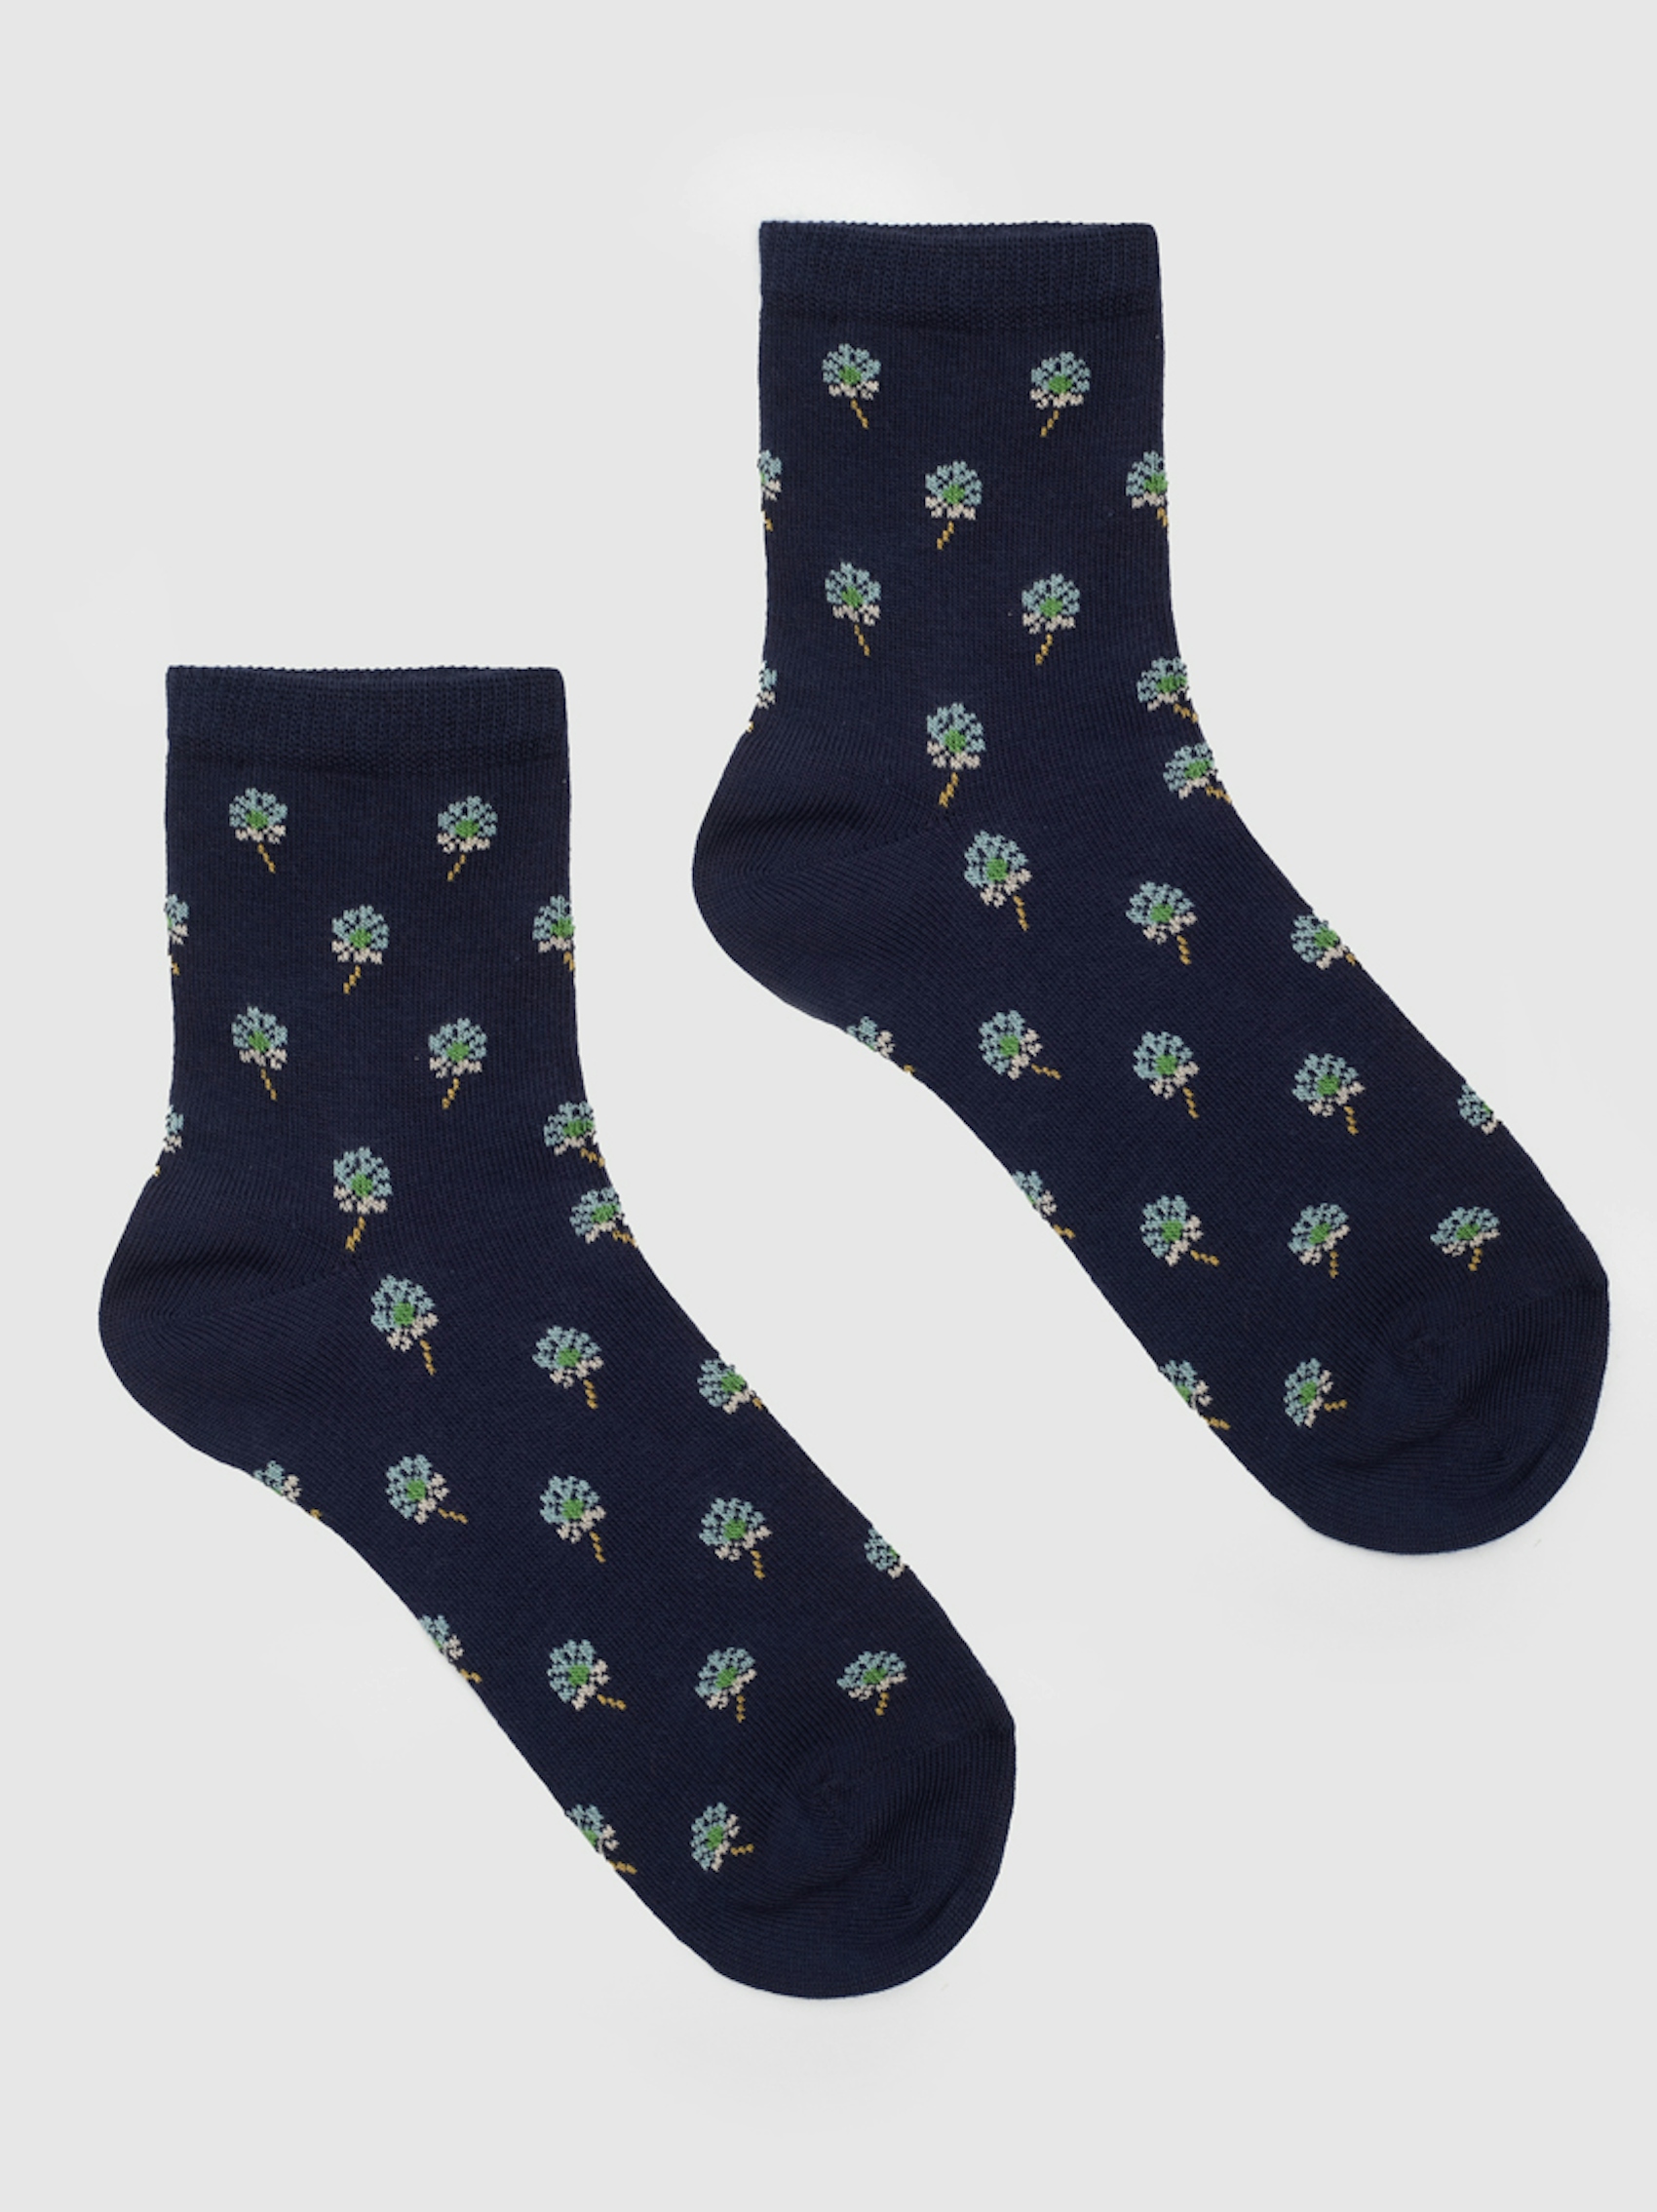 Blanket Flower socks